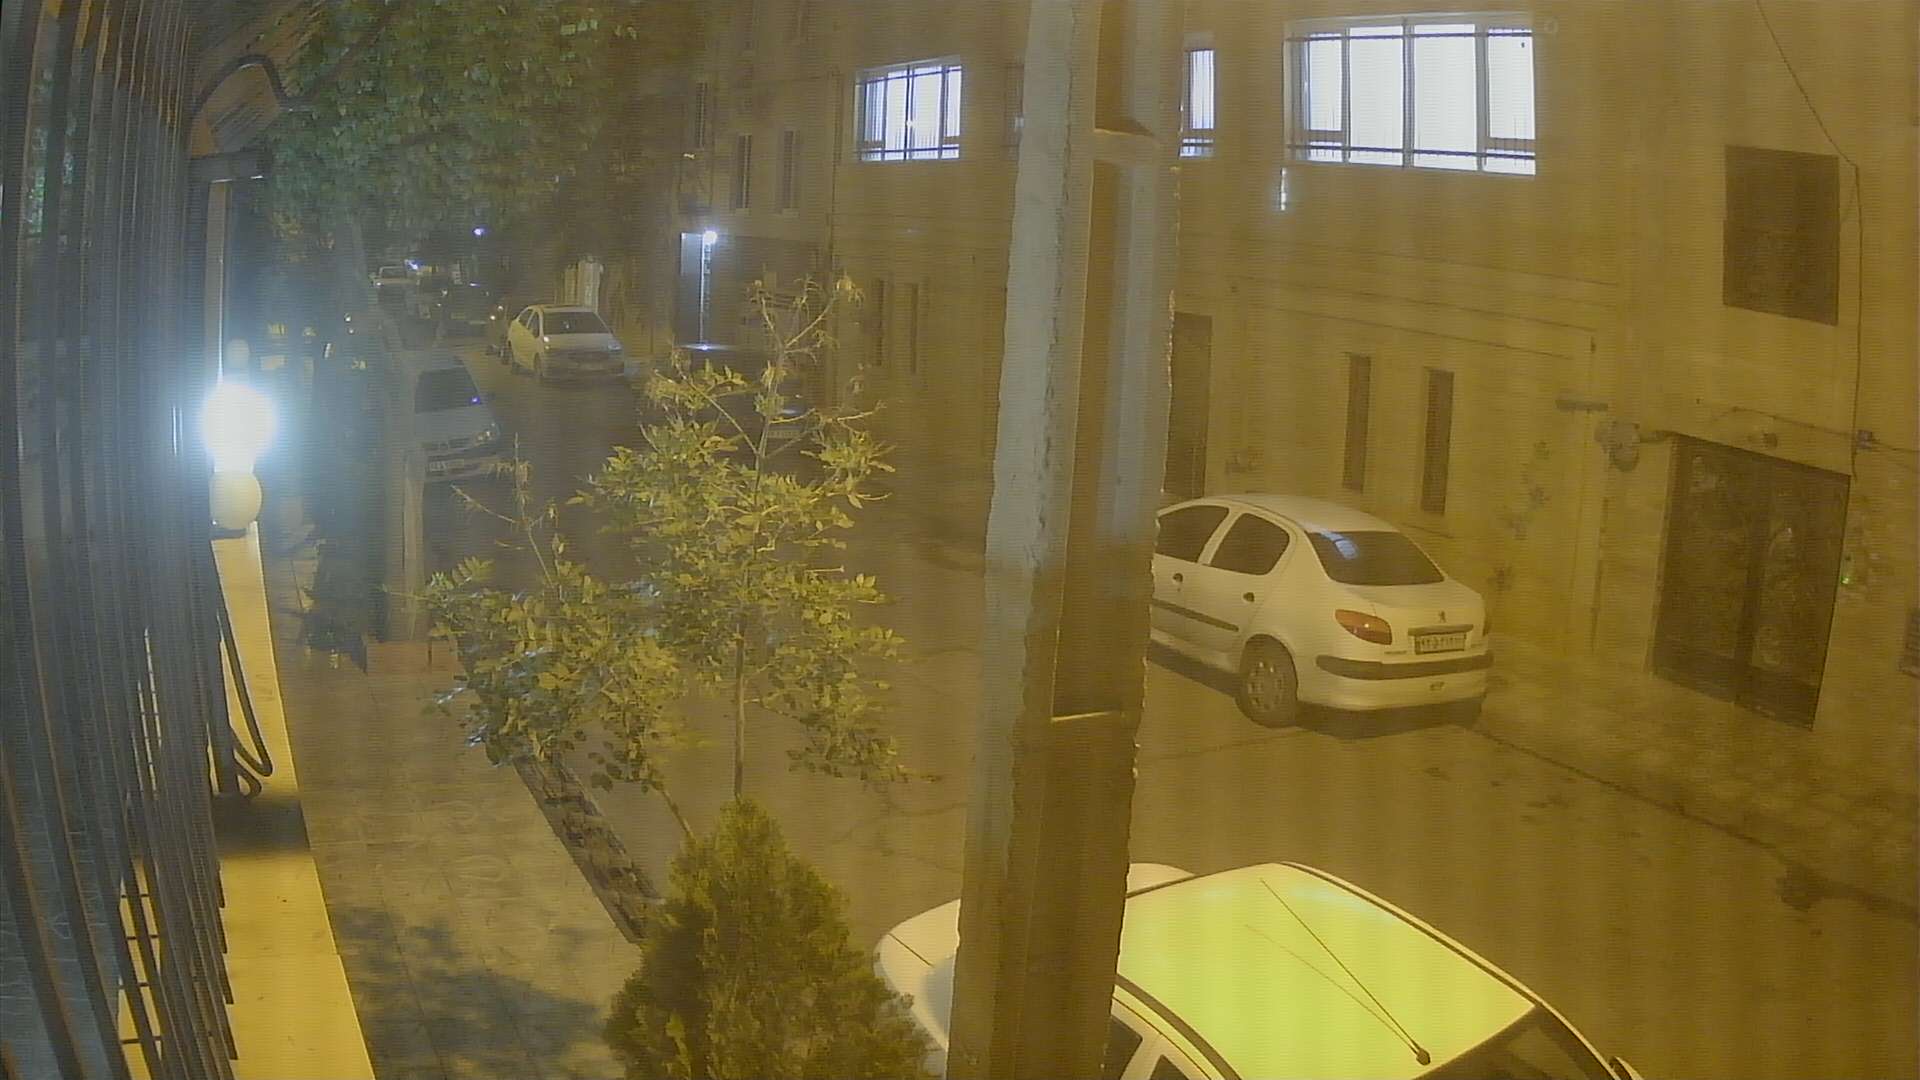 Live camera in Tehran